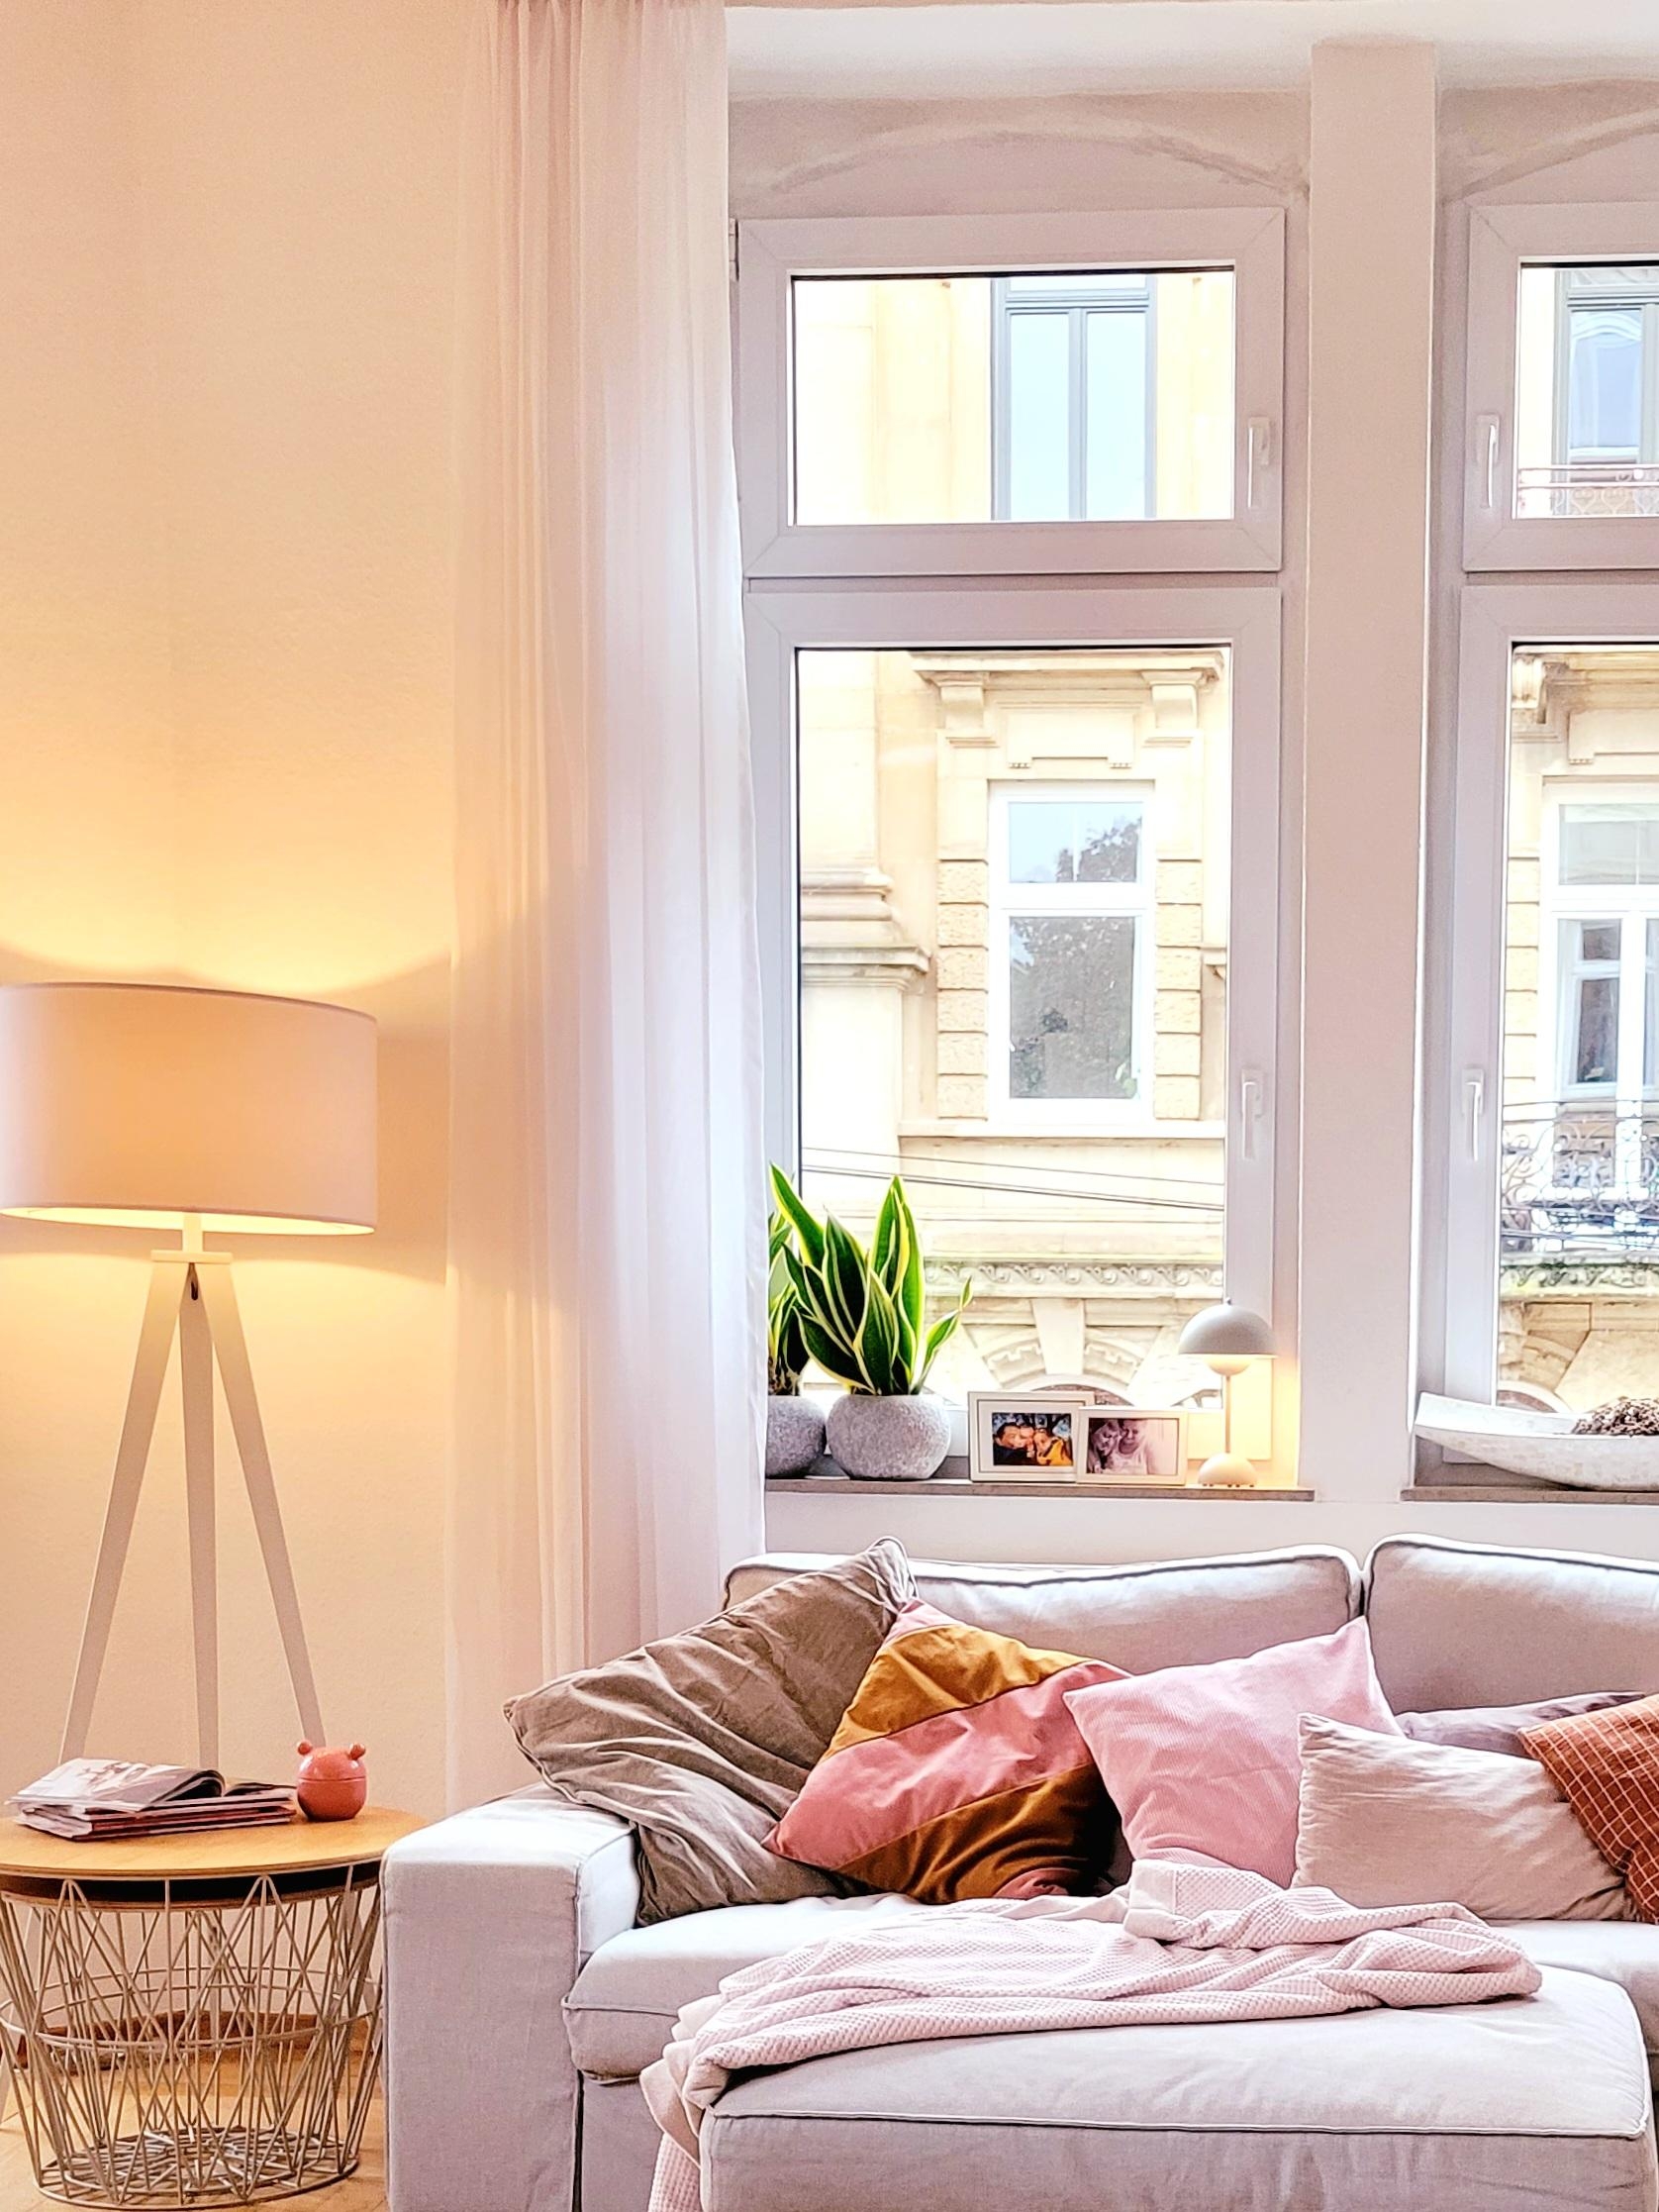 #altbau wohnzimmer #Sofa #Couch #gemütlich #weekend  
Schönes Wochenende euch allen♡